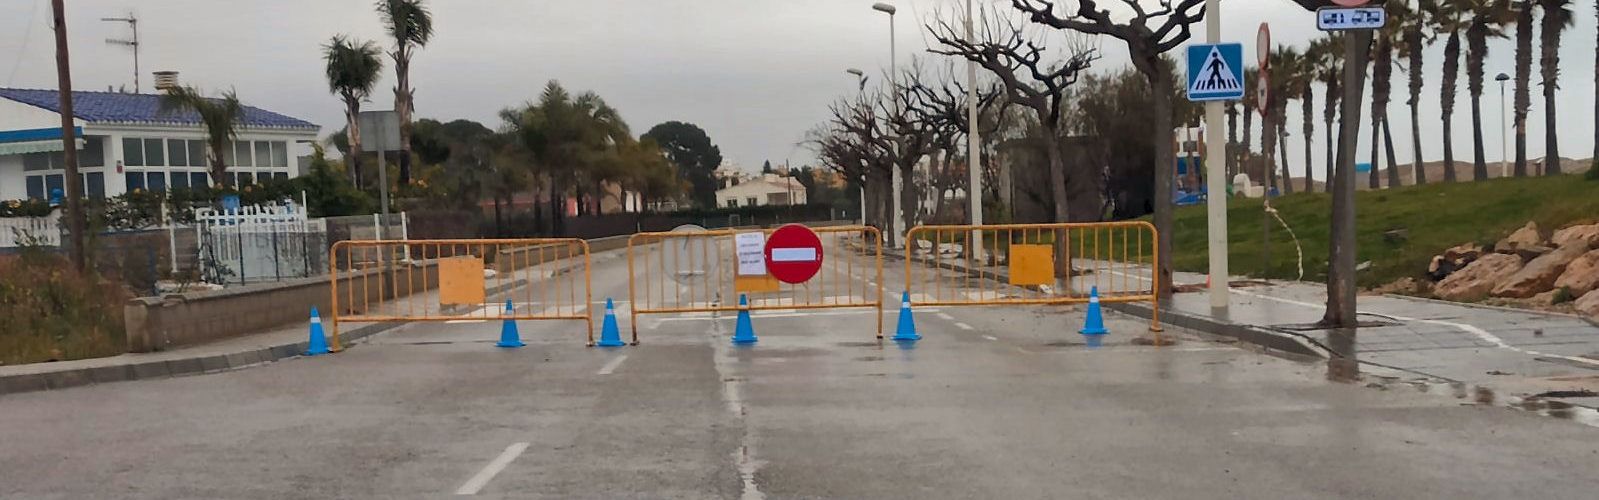 L’Ajuntament d’Alcanar tanca els accessos secundaris a les Cases perquè no entren persones persones amb segona residència